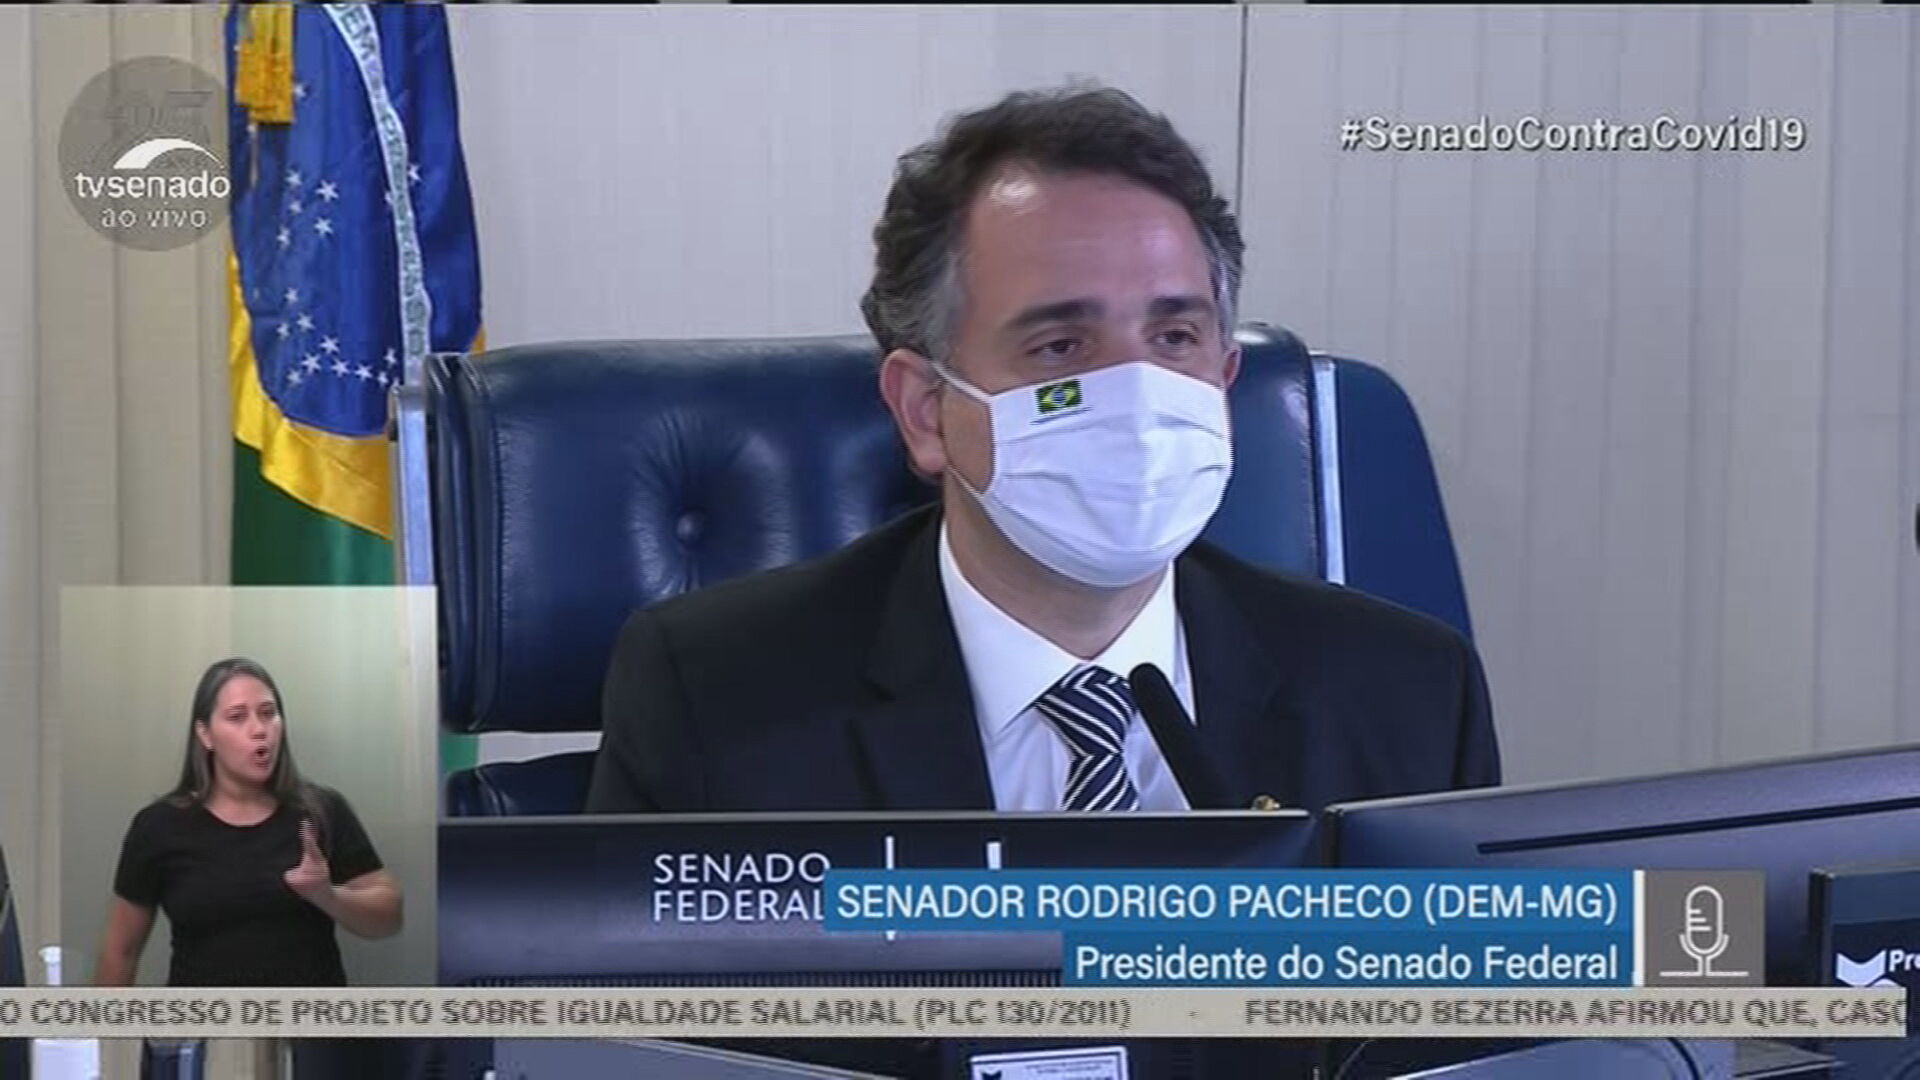 O presidente do Senado, Rodrigo Pacheco (DEM-MG), criticou as aglomerações